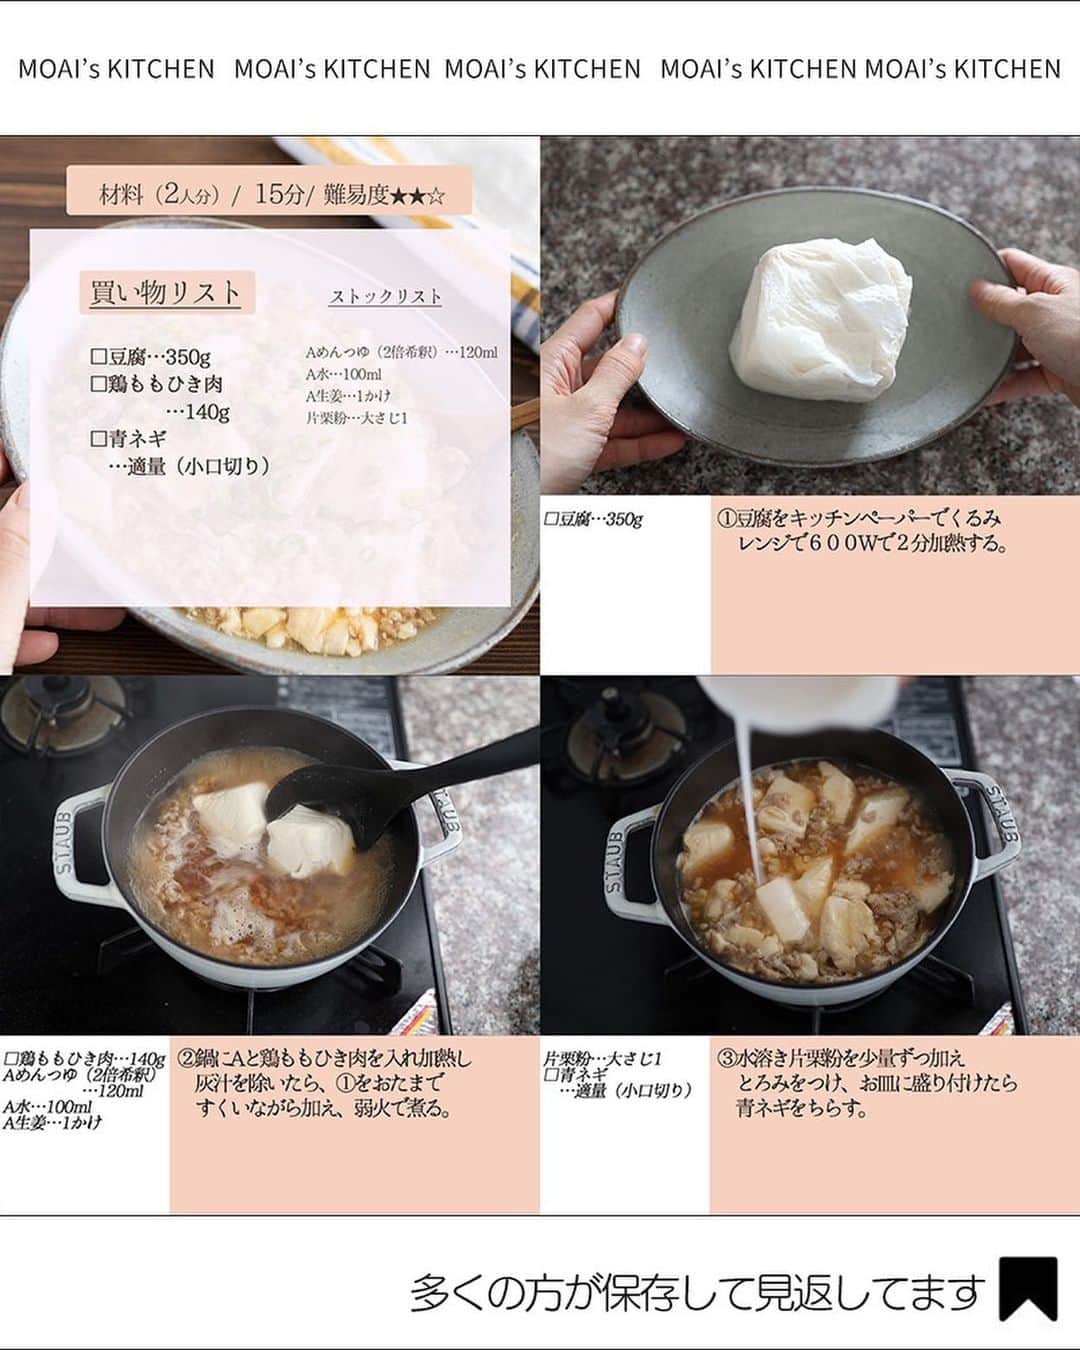 もあいさんのインスタグラム写真 - (もあいInstagram)「レシピ付き ⋆⸜ 豆腐レシピ4選 ⸝⋆  コメントでみんなとお話したいです😭💕💕💕 些細なことでもお待ちしてます！  ⋈・。・。⋈・。・。⋈・。・。⋈ ・。・。⋈  ようこそ٩(^‿^)۶ Ⓜ︎ⓄⒶⒾ🅢ⓀⒾⓉⒸⒽⒺⓃ 𓎩へ こんばんは、もあいです︎ 𓇚  ヘルシーでおいしくて色んな料理に合う豆腐♪ 私は冷蔵庫にストックしているので、よく豆腐レシピ作ります！ ぜひ試してみてくださいね😊  ♔∴∵∴♔∴∵∴♔∴∵∴♔∴∵∴♔∴∵∴♔∴∵∴♔  右上の保存ボタンを押して あとでゆっくり見返してくださいね♡  #OL仕事めし #働楽ごはん #モアイズキッチン  ✍︎ recipe① 〰〰〰〰 ⸜ 極み　豚こまスンドゥブ ⸝⋆ 難易度 ✭✭✩ ≀ ◷ 15分 ≀1人前187円  ✿ 材料(2人分)  ・豚こま肉…100g ・絹豆腐…1丁(300g) ・キムチ…150g ・卵…2個 ・えのき…1/2袋 ・にら…1/2束 ・白ネギ…1/2本 ・味噌…小2 Aコチュジャン…大1 Aごま油…大1 A醤油…小2 Aおろしにんにく…小1 A鶏がらスープの素…小1 A水…500ml  ✿ 作り方  ①えのきは石づきをとって手で割く。 　白ネギは斜め切りする。 　にらは４cm幅に切る。  ②鍋にAを入れて混ぜ、キムチ、えのき、 　白ネギを入れる。豆腐はスプーンで 　すくい入れ、沸騰させる。  ③豚肉を加え一煮立ちさせ、 　味噌を溶かし入れる。  ④にらを加え、卵を落としてお好みの 　固さになるまで加熱する。  ✍︎ recipe② 〰〰〰〰 ⋆⸜ 豆腐と玉ねぎの豚汁 ⸝⋆ 難易度 ✭✩✩ ≀ ◷ 15 分 ≀ ¥ 500円  ✿ 材料(2人分) □豚バラ…100g □豆腐…100g □玉ねぎ…1/2個 A和風だしの素…小さじ1/2 A水…600ml ・味噌…大さじ2 ・青ネギ…適量  ✿ 作り方  ①鍋にAを入れて沸かす  ②1cm幅に切った玉ねぎと 　豆腐をスプーンですくって入れる  ③豚バラを2cm幅に切って加え、灰汁をとる 　弱火で10分煮込む  ④味噌を加えて2~3分煮込む 　お好みで青ネギをトッピングする  ✍︎ recipe③ 〰〰〰〰 ⋆⸜ 豆腐ハンバーグ ⸝⋆ 難易度 ✭✭✩　≀ ◷ 15 分  ✿材料(2人分)  □合い挽き肉…150g □木綿豆腐…150g(1/2丁) □玉ねぎ…1/2個 □卵…1個 □パン粉…大さじ3 □牛乳…大さじ1 □しめじ…1/2袋 □えのき…1/2袋 □カット野菜…適量 ・コンソメ…小さじ1/2 ・塩胡椒…少々 ・サラダ油…適量 Aケチャップ…大さじ2 Aウスターソース…大さじ2 Aみりん…大さじ2 Aバター…10g(お好みで)  ✿作り方  ①玉ねぎはみじん切り。 　しめじとえのきは石づきをとる。 　玉ねぎを耐熱容器に入れて１分加熱する。 　豆腐はキッチンペーパーで包み 　レンジで６００Wで２分加熱して 　水切りして、粗熱をとる。  ②ボウルに合い挽き肉、 　玉ねぎ、豆腐、卵、パン粉、牛乳、 　コンソメ、塩胡椒を入れて混ぜる。 　粘り気が出るまで捏ねてたら、 　丸く成形する。  ③フライパンでサラダ油を 　強めの中火で熱する。 　肉だねを入れて両面焼き色が付くまで焼く。 　焼き色が付いたら蓋をして、 　強めの弱火で６分加熱する。  ※竹串を刺して透明な肉汁が出てきたら火が通ってます！  ④③を取り出し、皿に盛る。 　しめじとえのきをフライパンで炒め、 　Aを加えて軽く煮詰めてソースを作る。 　ソースをハンバーグにかけて、 　カット野菜を盛り付ける。  ✍︎ recipe④ 〰〰〰〰 ⋆⸜ 極上 豆腐の鶏そぼろあん ⸝⋆ 難易度 ✭✭✩≀ ◷ 15分  ✿ 材料(2人分)  □豆腐…350g □鶏ももひき肉…140g □青ネギ…適量（小口切り） Aめんつゆ（2倍希釈）…120ml A水…100ml A生姜…1かけ 片栗粉…大さじ1  ✿ 作り方  ①豆腐をキッチンペーパーでくるみ 　レンジで６００Wで２分加熱する。  ②鍋にAと鶏ももひき肉を入れ加熱し 　灰汁を除いたら、①をおたまで 　すくいながら加え、弱火で煮る。  ③水溶き片栗粉を少量ずつ加え 　とろみをつけ、お皿に盛り付けたら 　青ネギをちらす。  ♔∴∵∴♔∴∵∴♔∴∵∴♔∴∵∴♔∴∵∴♔∴∵∴♔  ✿お知らせ  🍳キッチンブランド【moai】発売中 📕#がんばらなくてもできるおいしいすぐレシピ 発売中 （Amazon、楽天ランキング１位獲得）  @moaiskitchen TOPのURLからもご覧になれます」5月13日 17時00分 - moaiskitchen